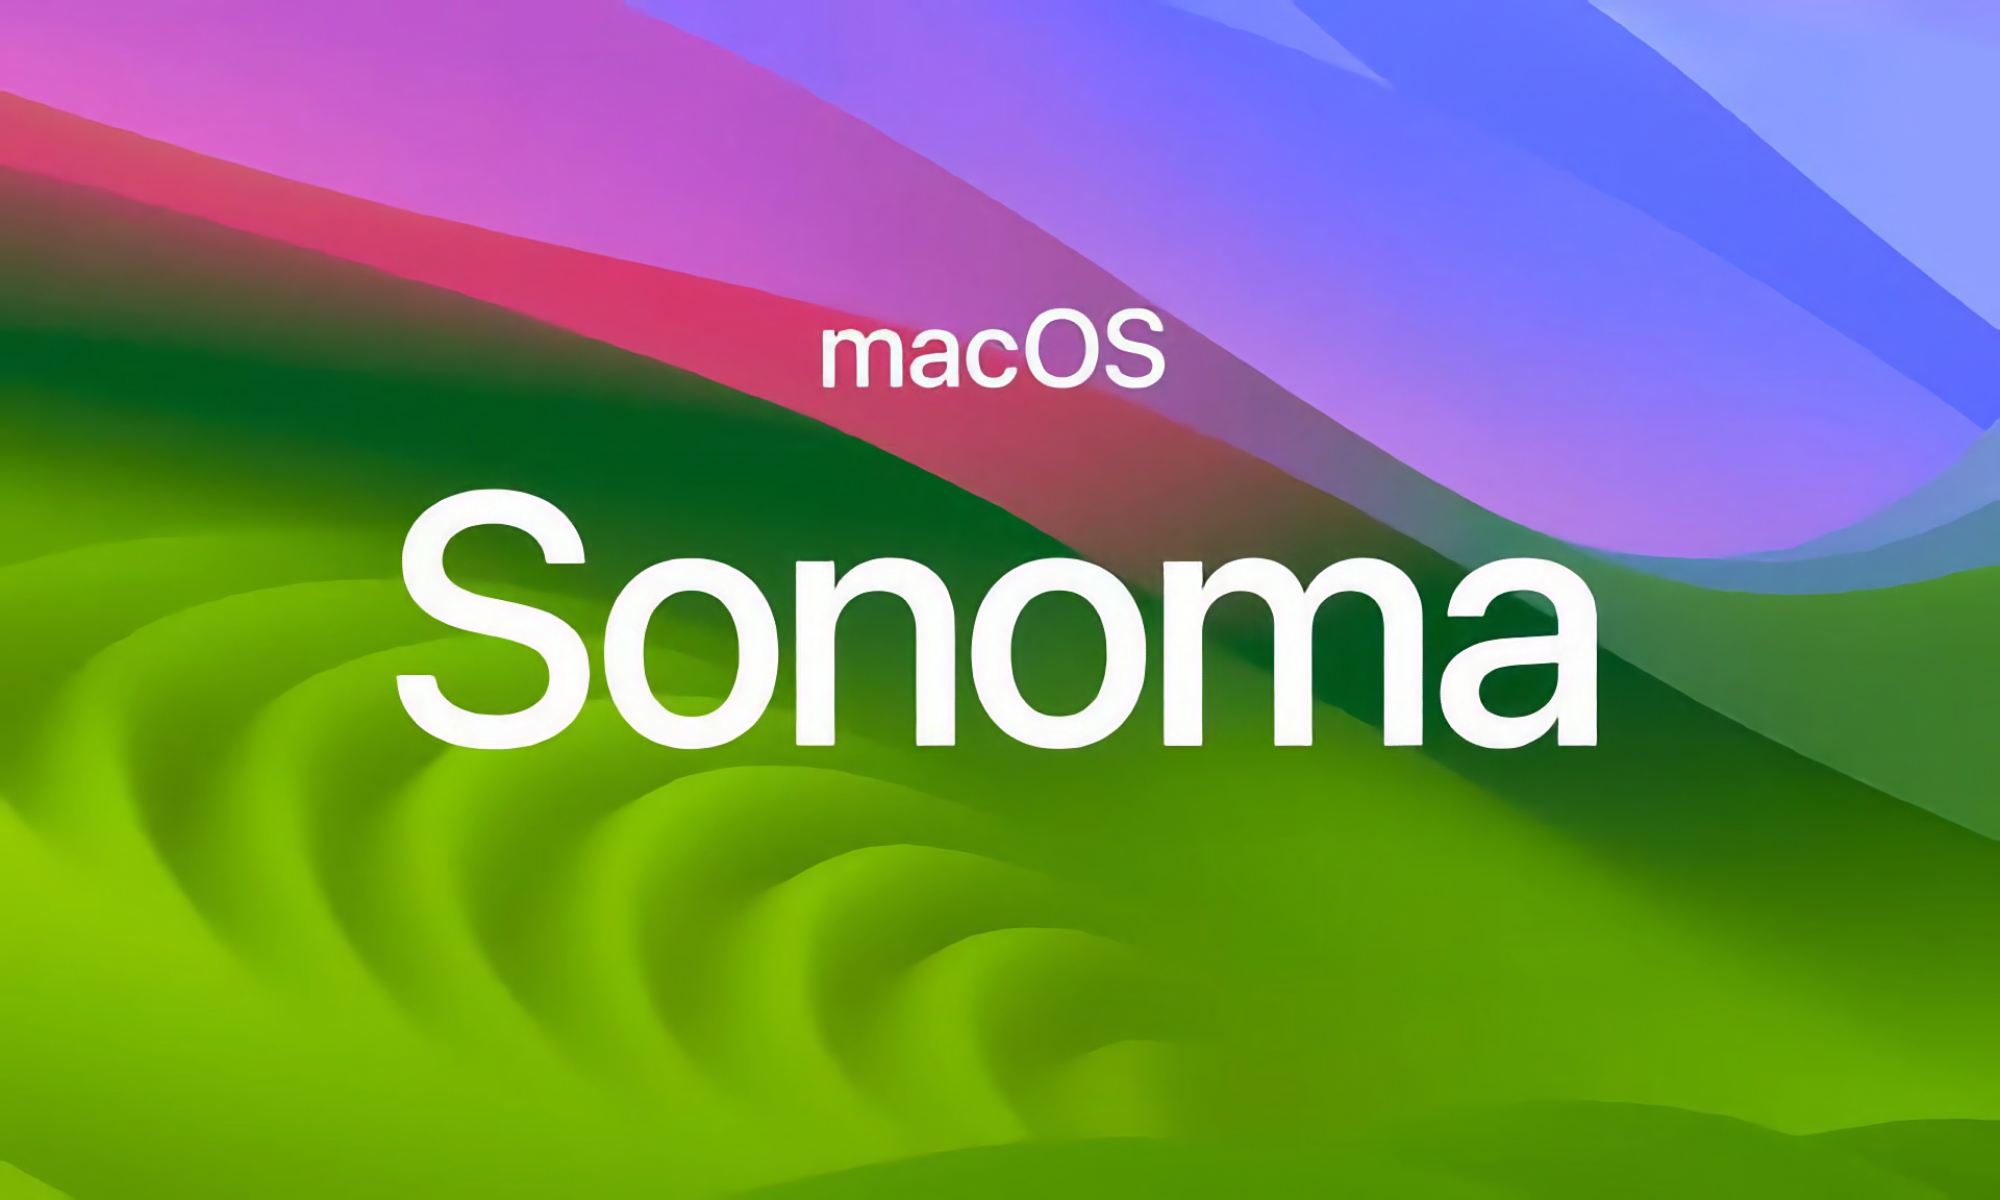 Po iOS 17.2 Beta 4: Apple rozpoczęło testy macOS Sonoma 14.2 Beta 4